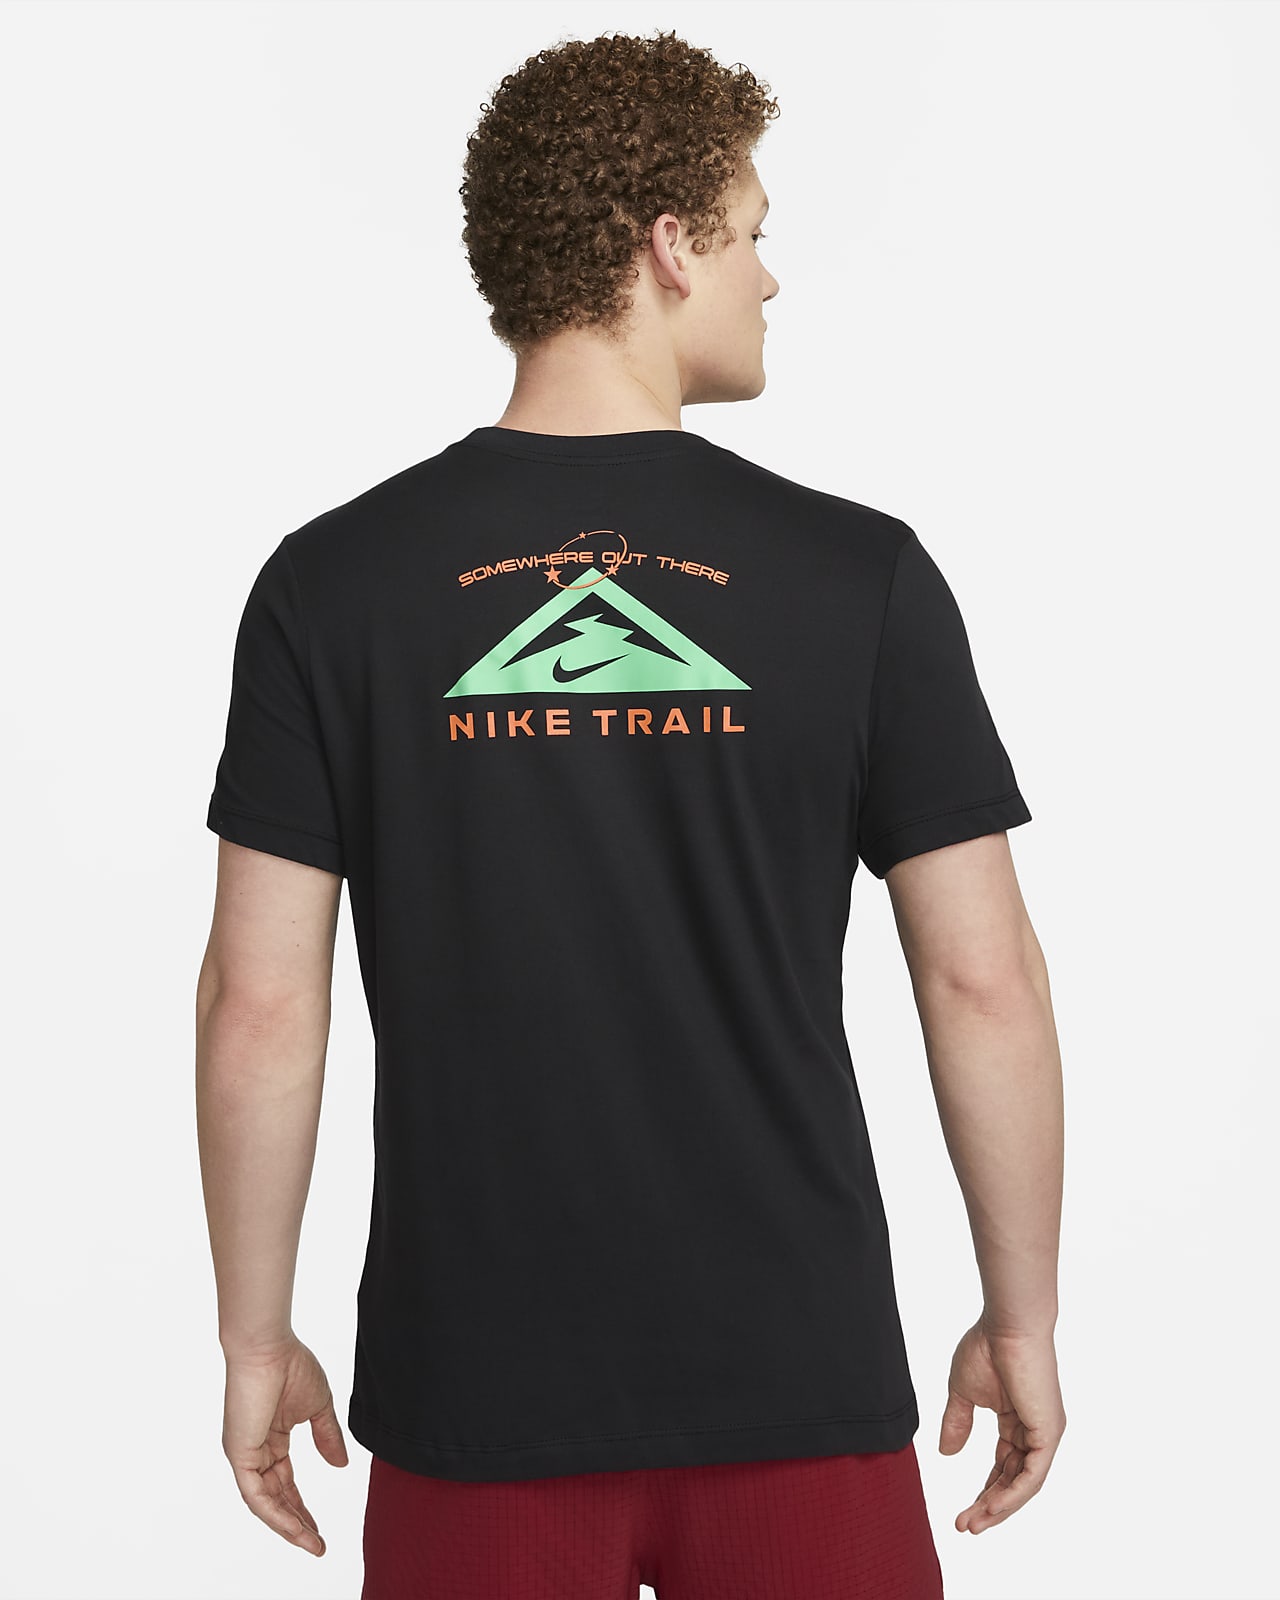 Nike Trail Dri-FIT Men's Running T-Shirt.